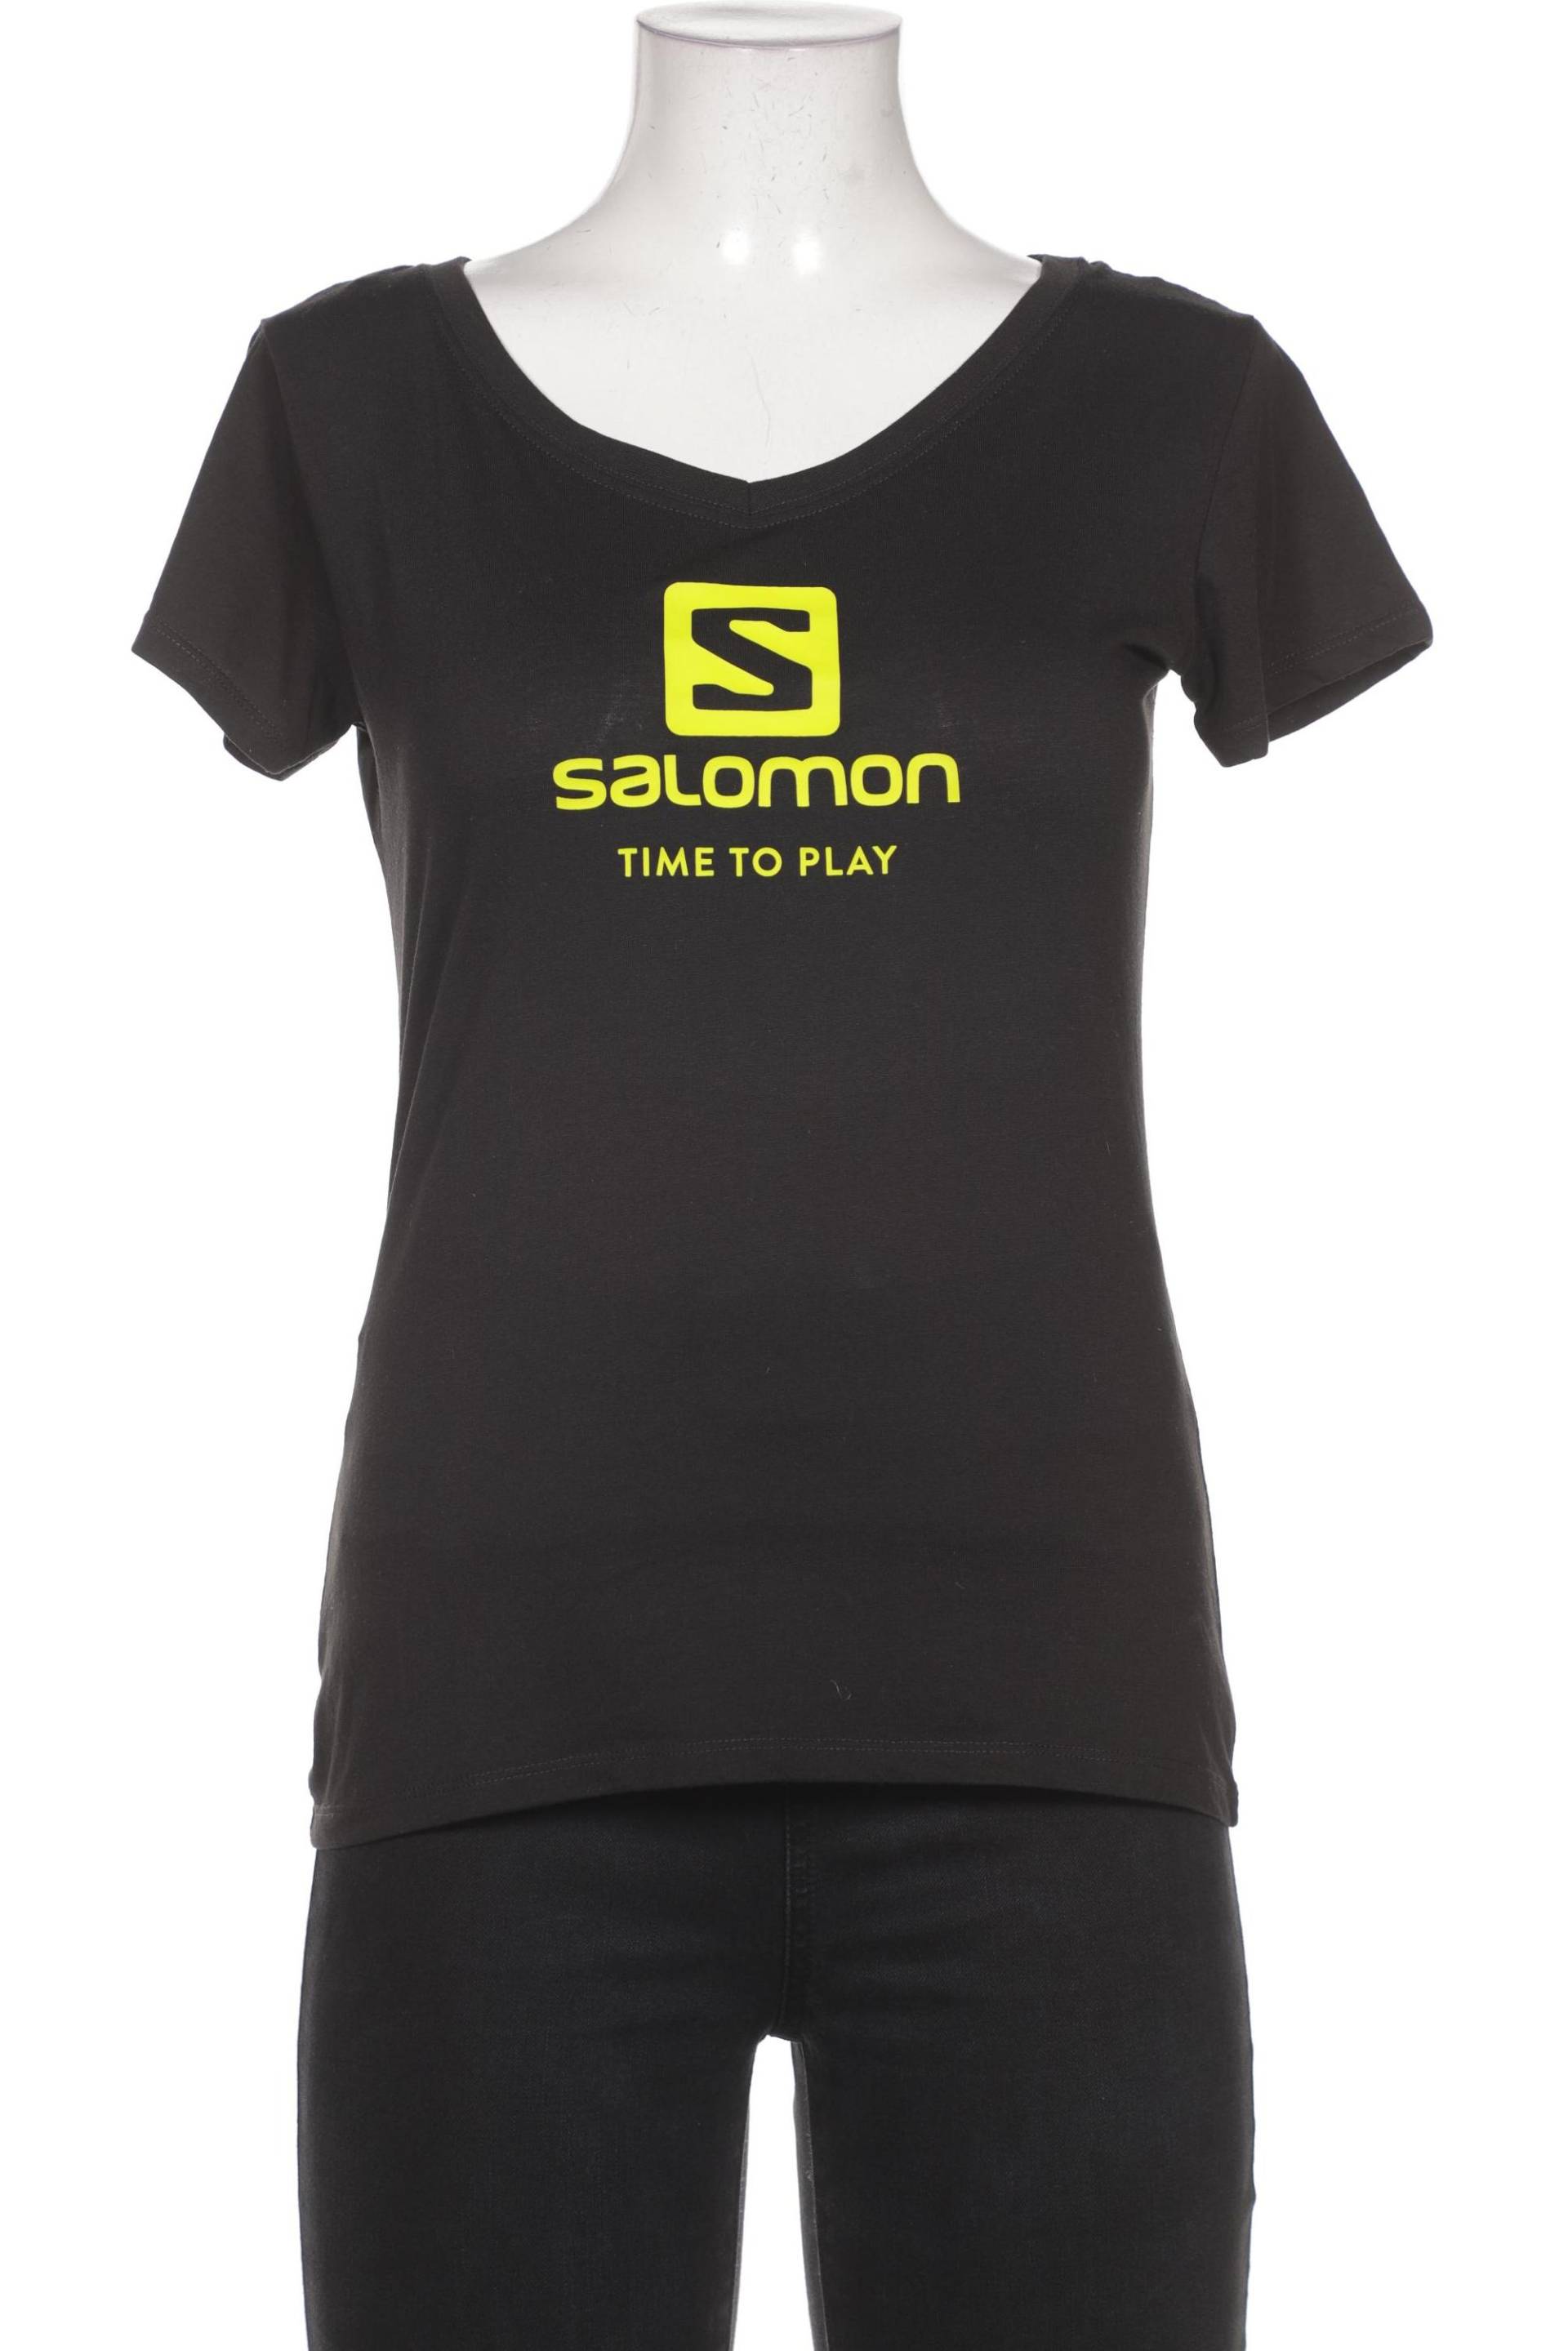 Salomon Damen T-Shirt, schwarz, Gr. 38 von Salomon